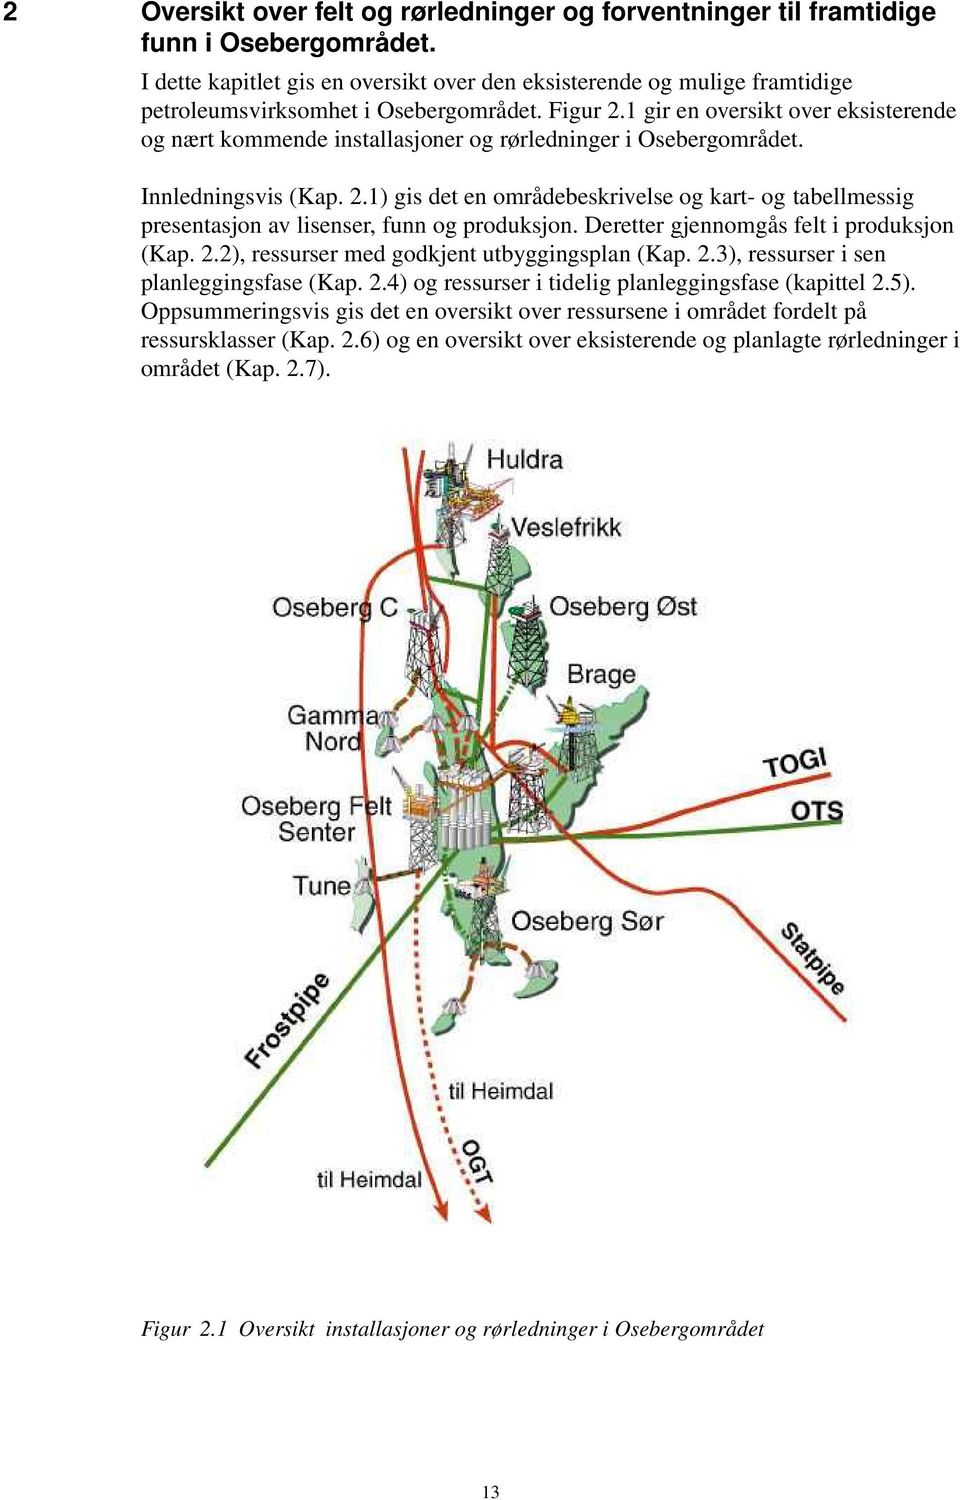 1 gir en oversikt over eksisterende og nært kommende installasjoner og rørledninger i Osebergområdet. Innledningsvis (Kap. 2.